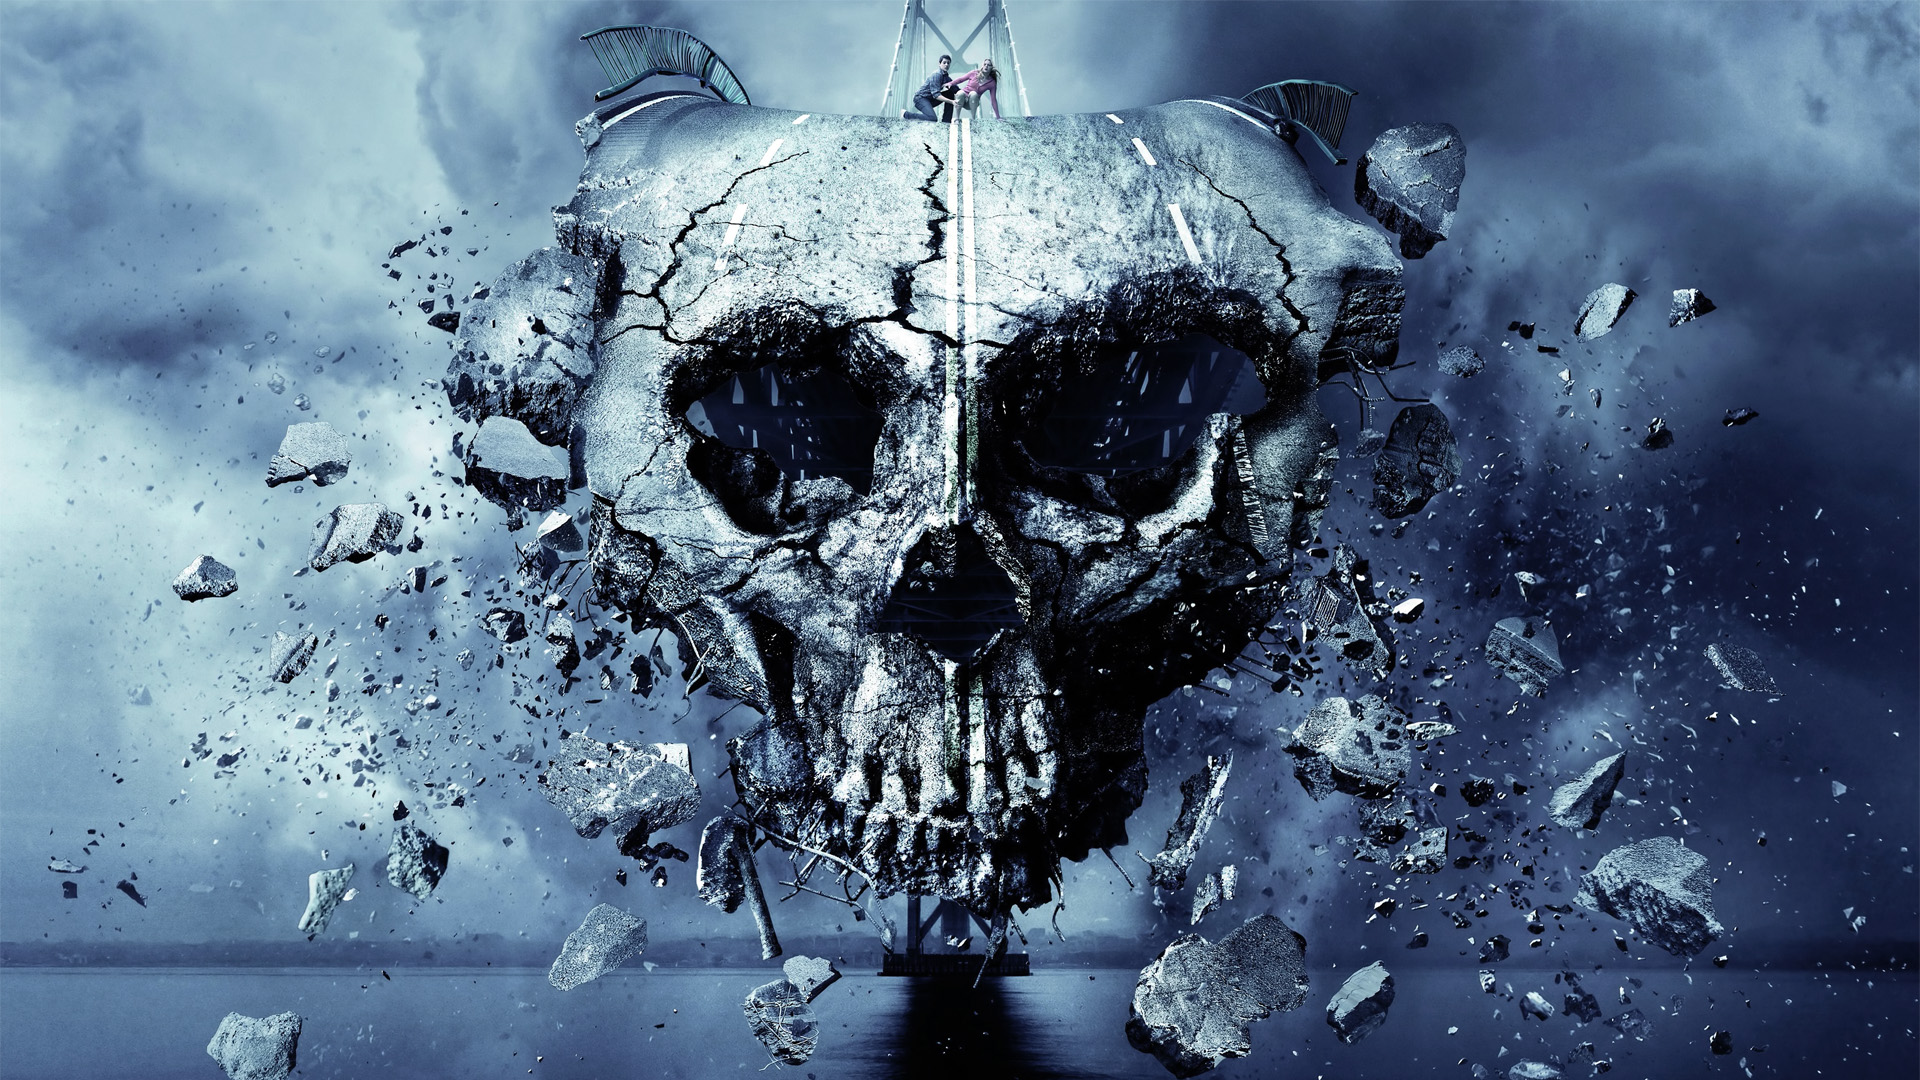 Final Destination Dark Skull Skulls Horror Wallpaper